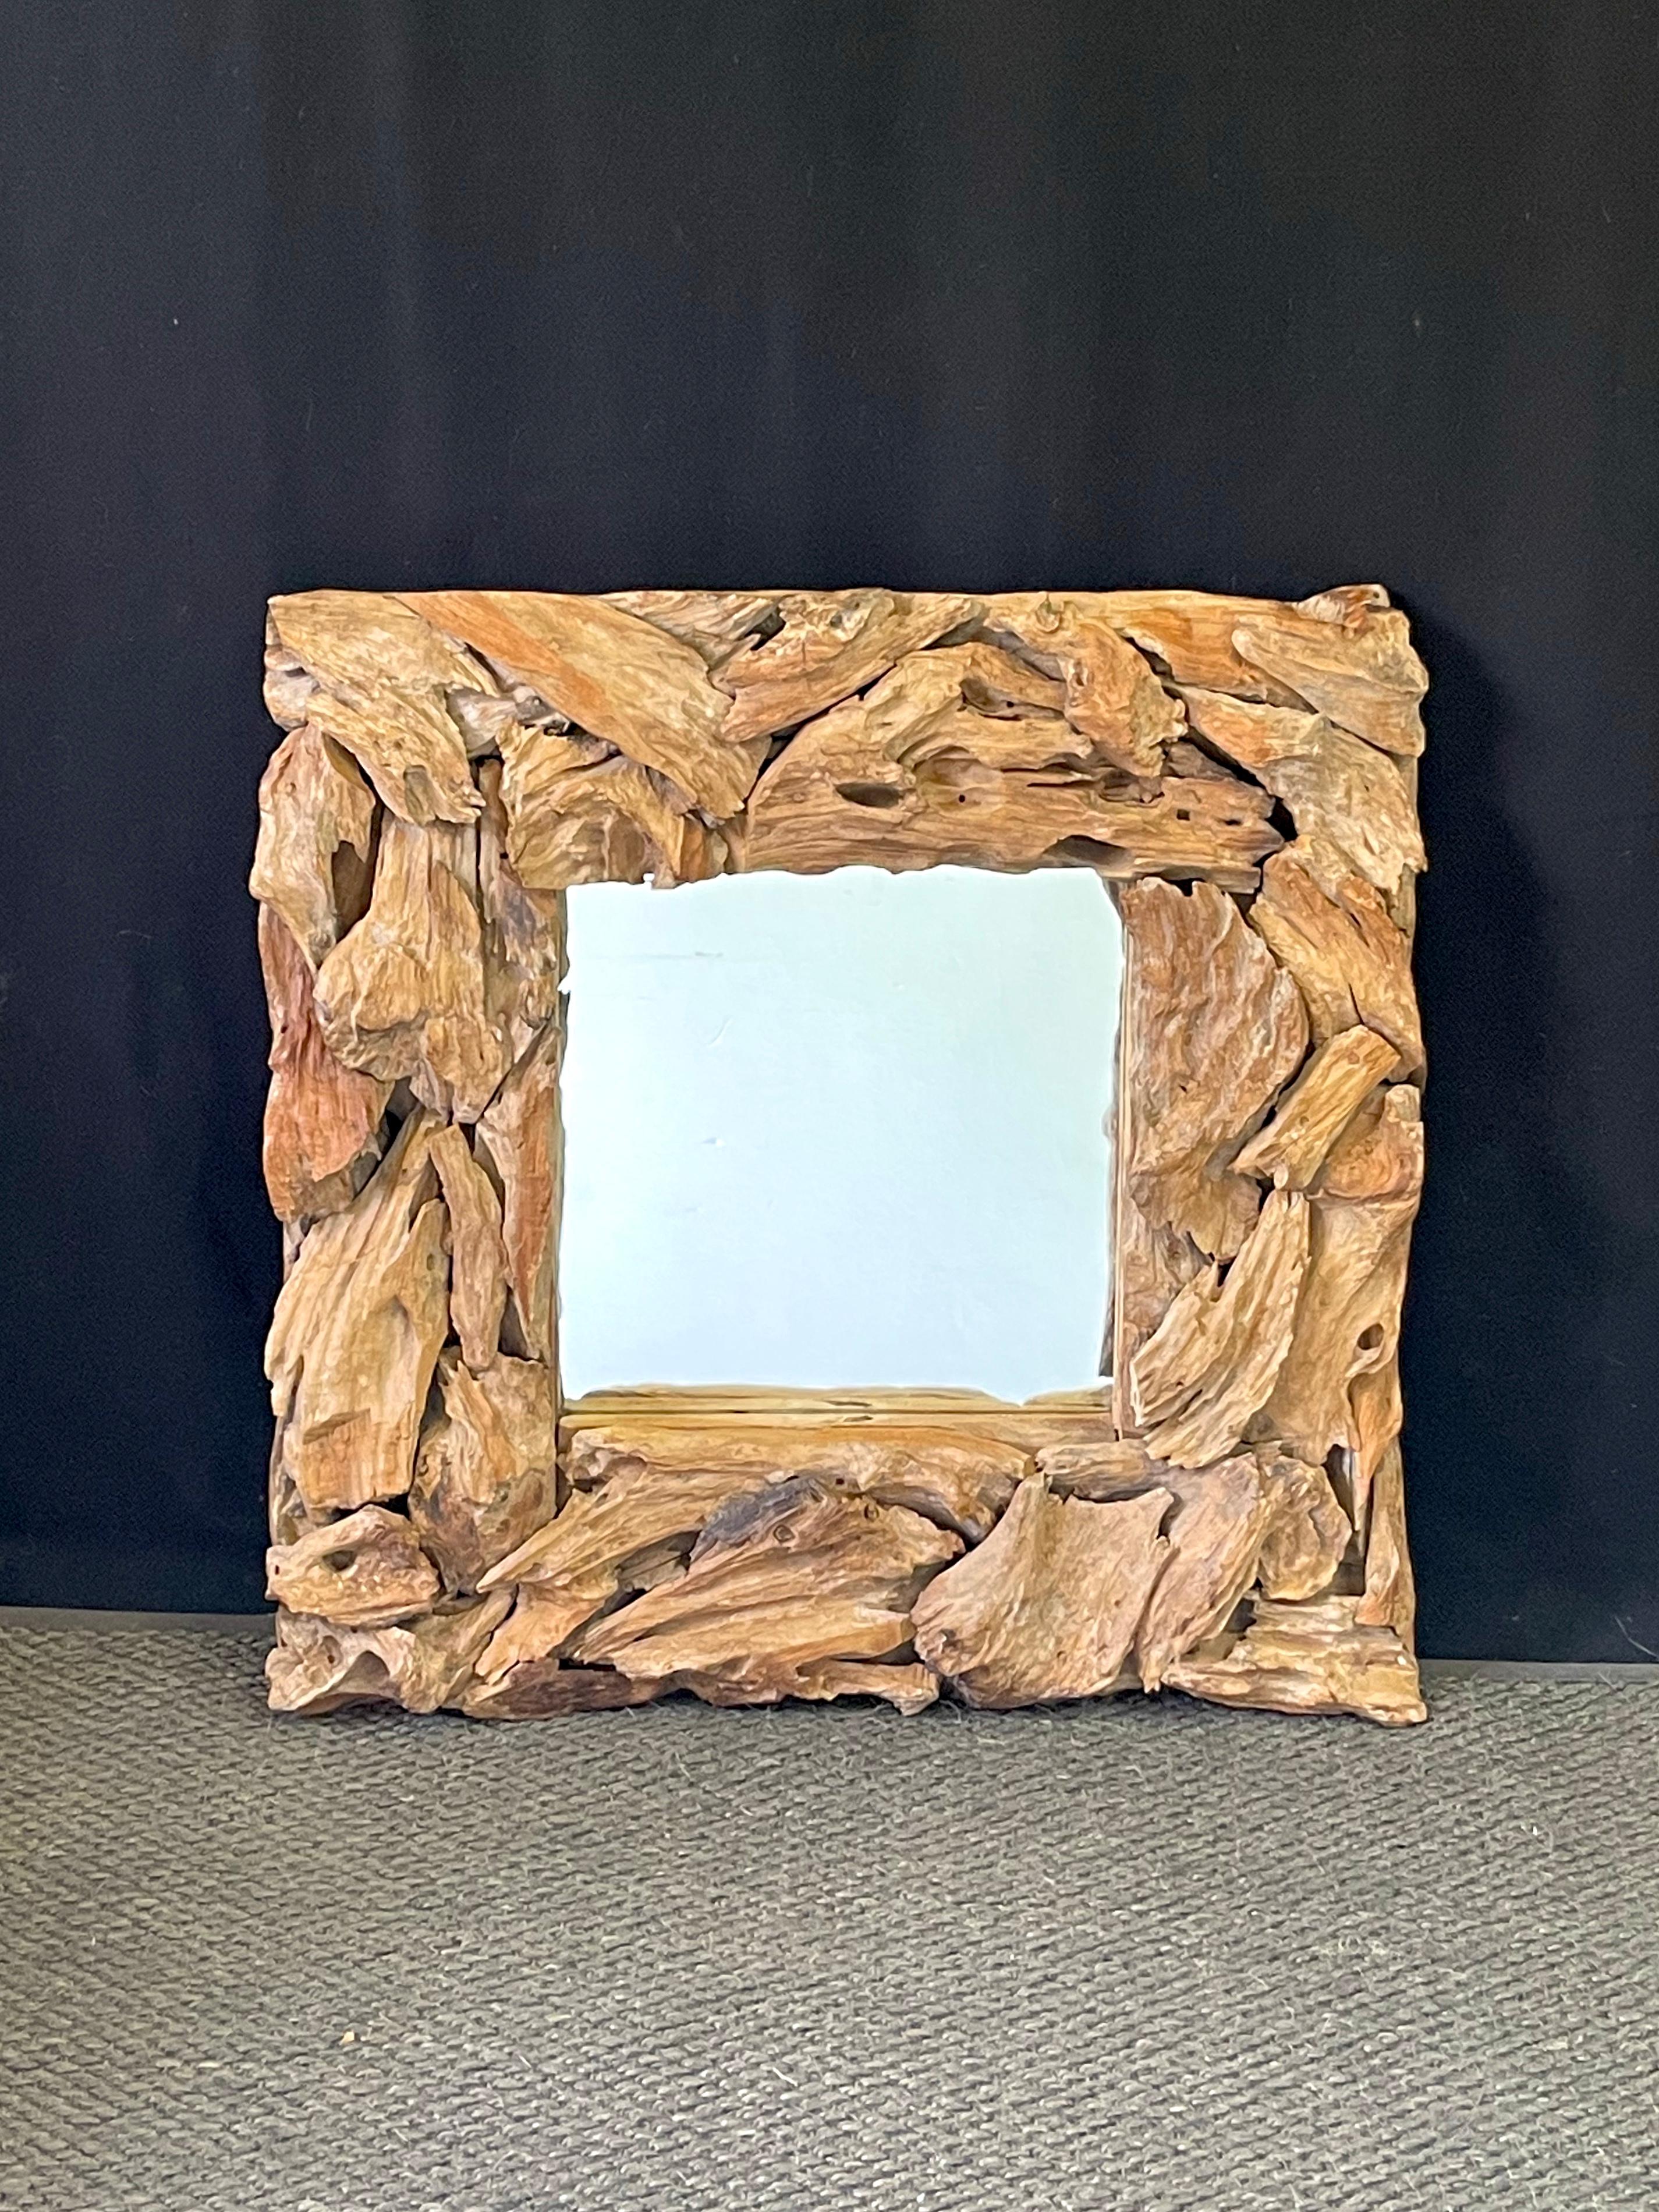 driftwood mirror frames